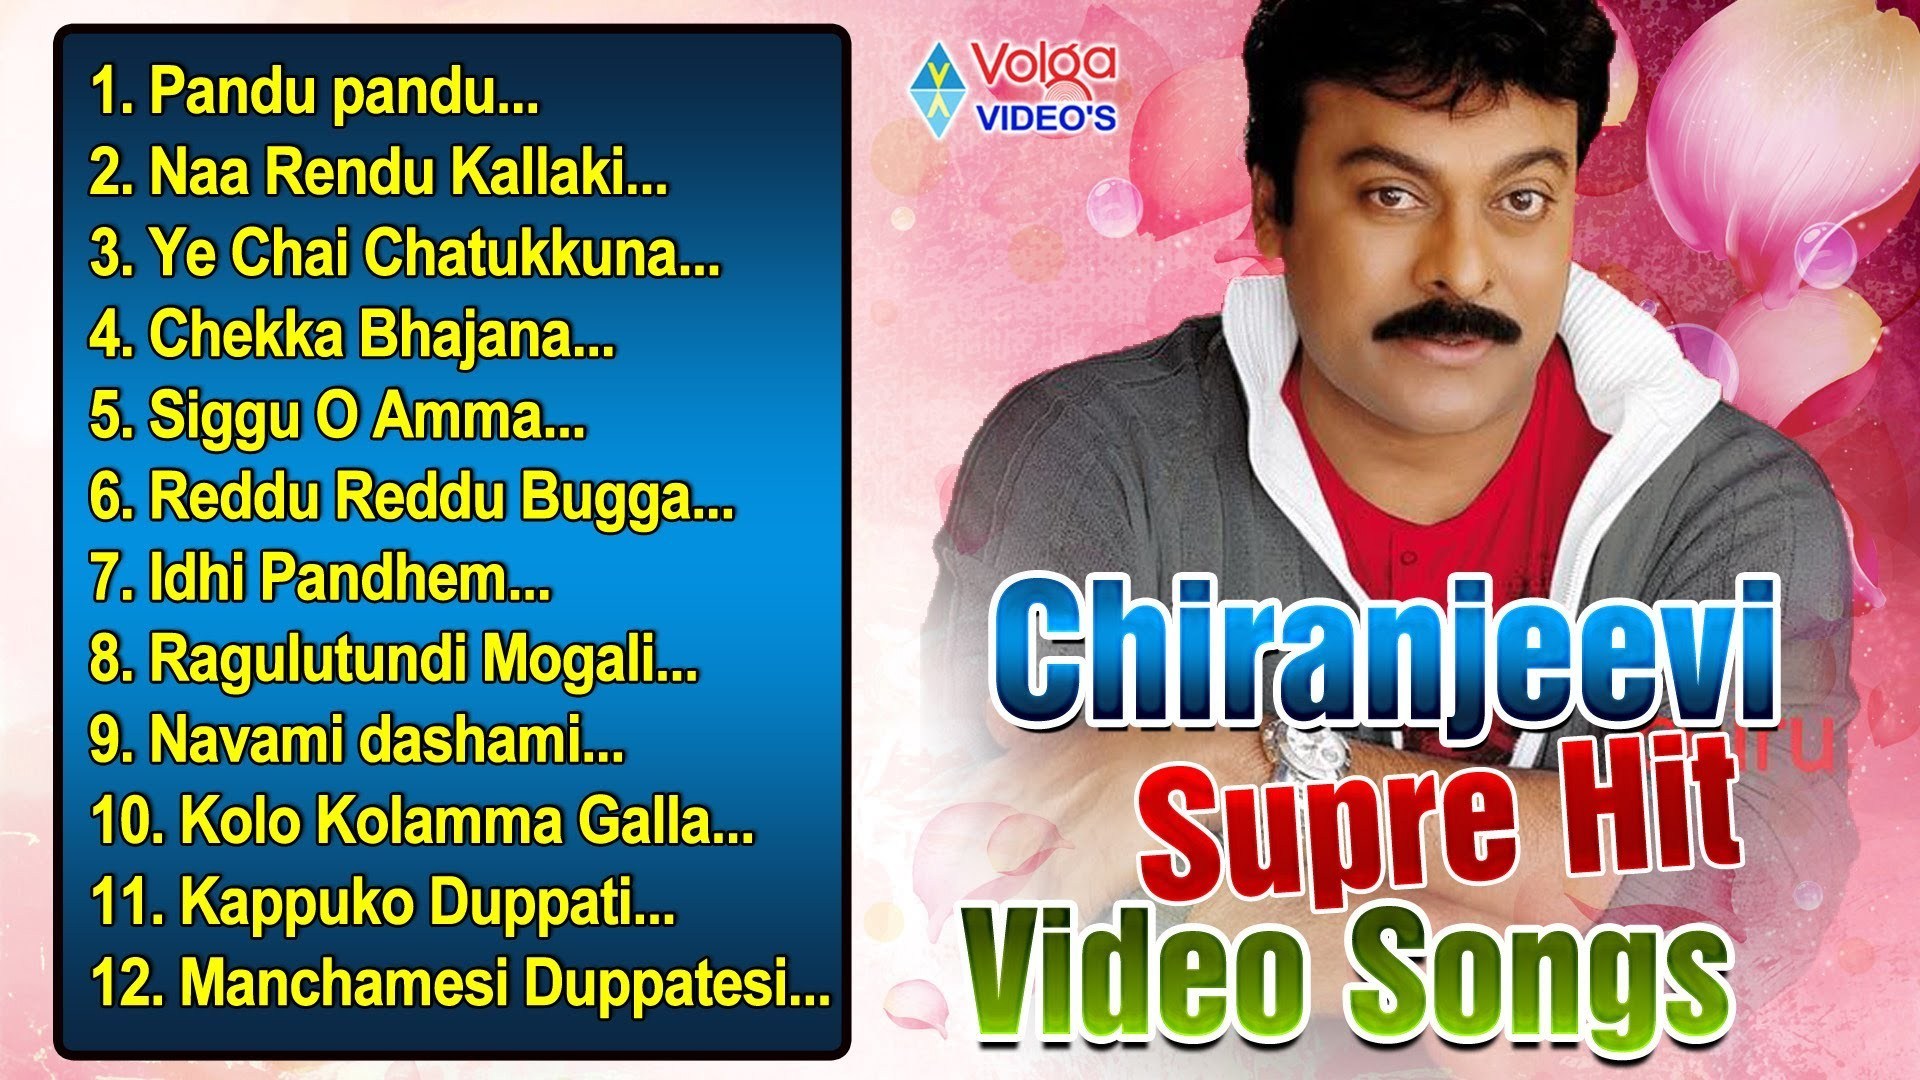 Telugu chiranjeevi songs